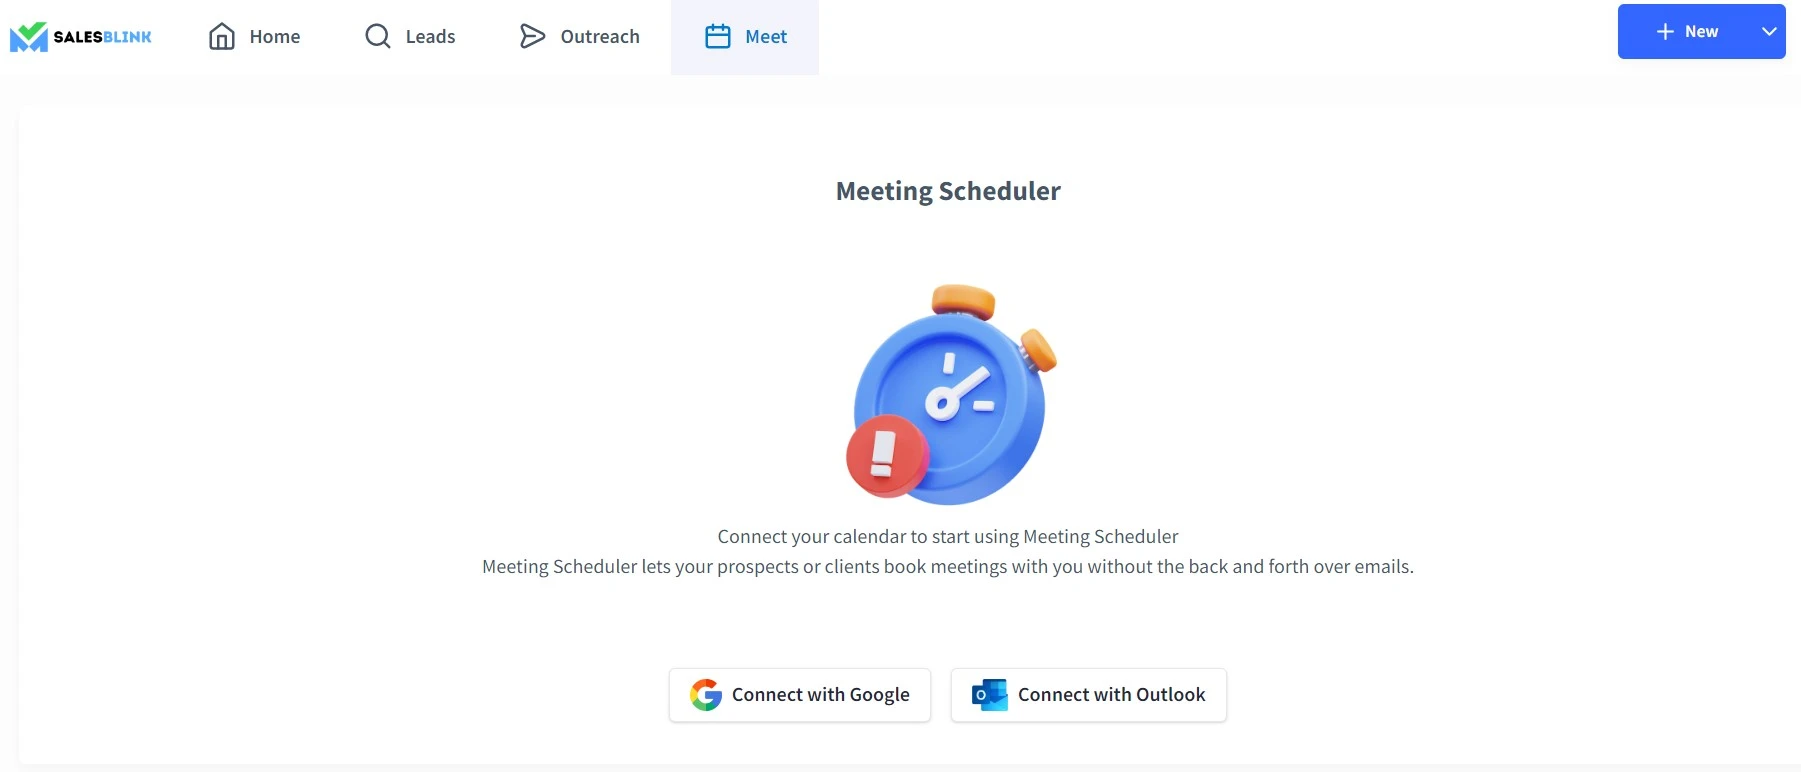 Connect calendar - SalesBlink meeting scheduler